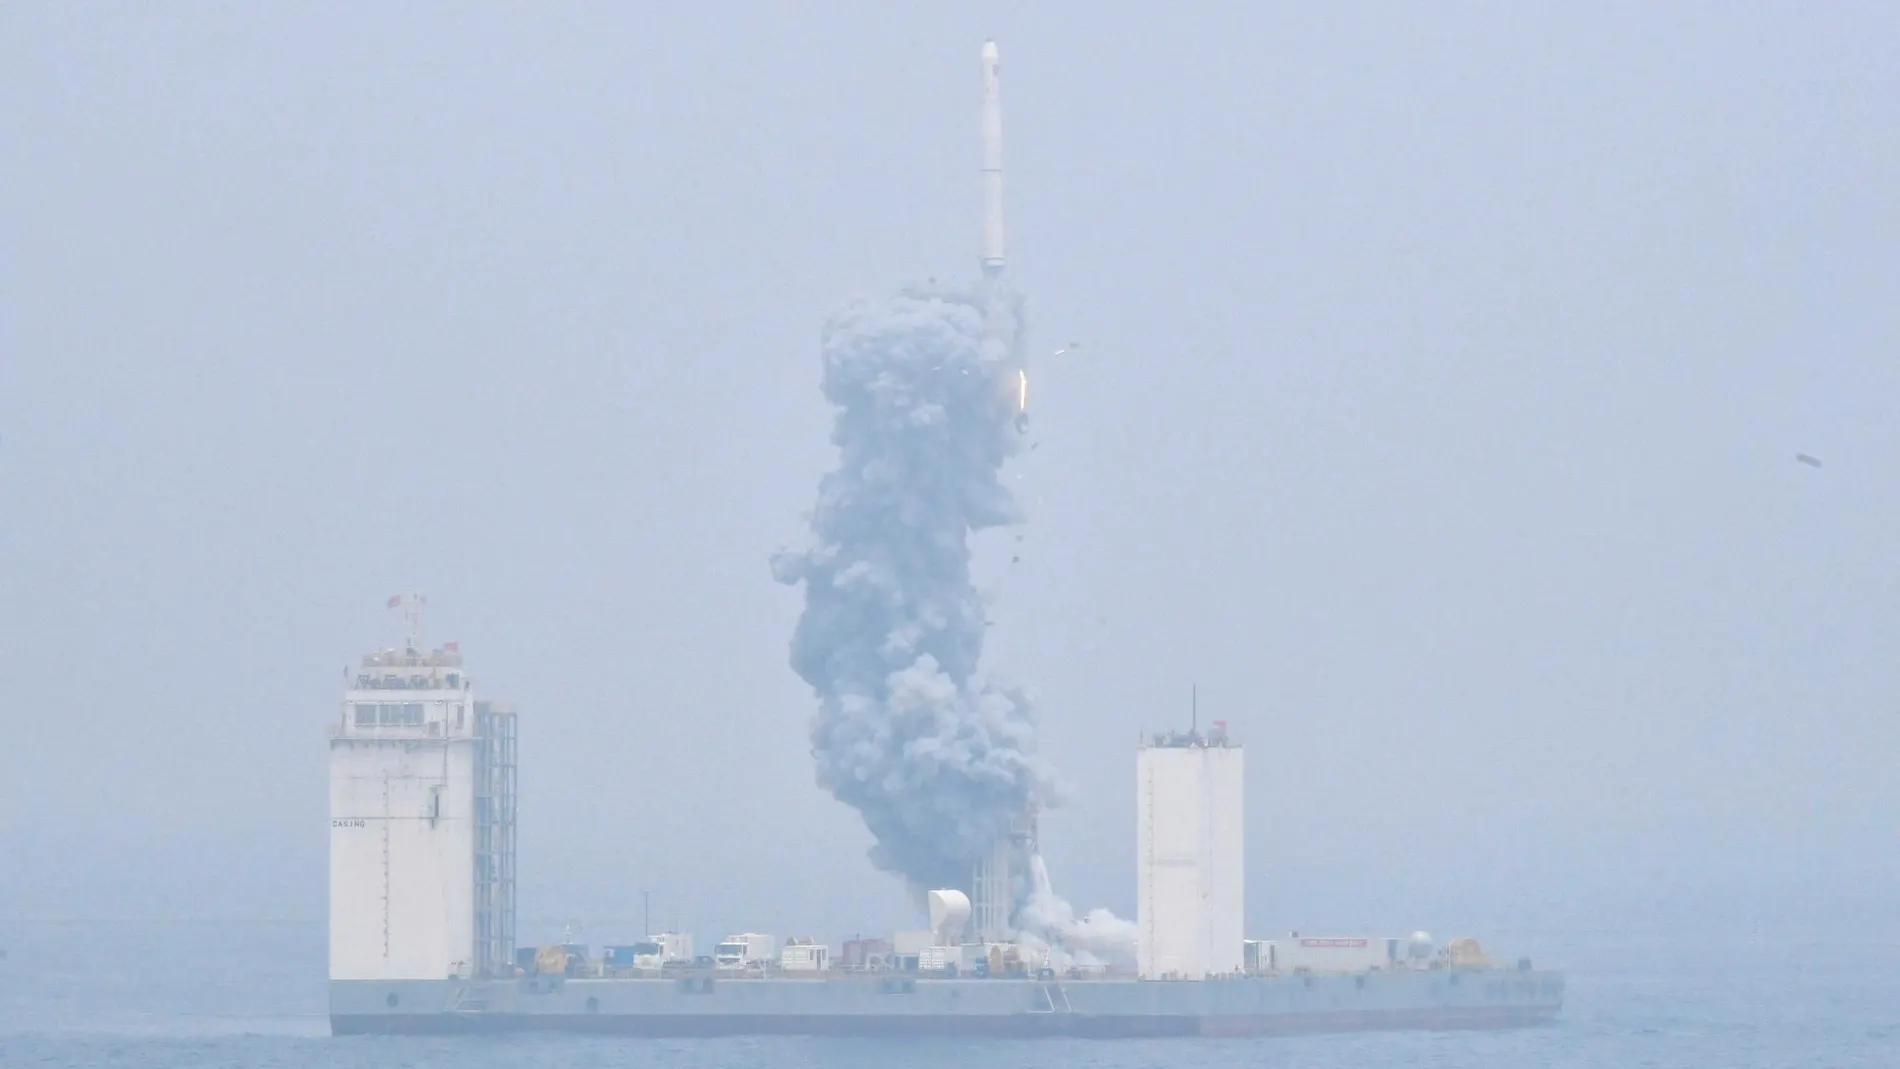 Cohete en propulsión lanzado desde una plataforma móvil situada en el mar Amarillo, en China. Foto: Xinhua News Agency